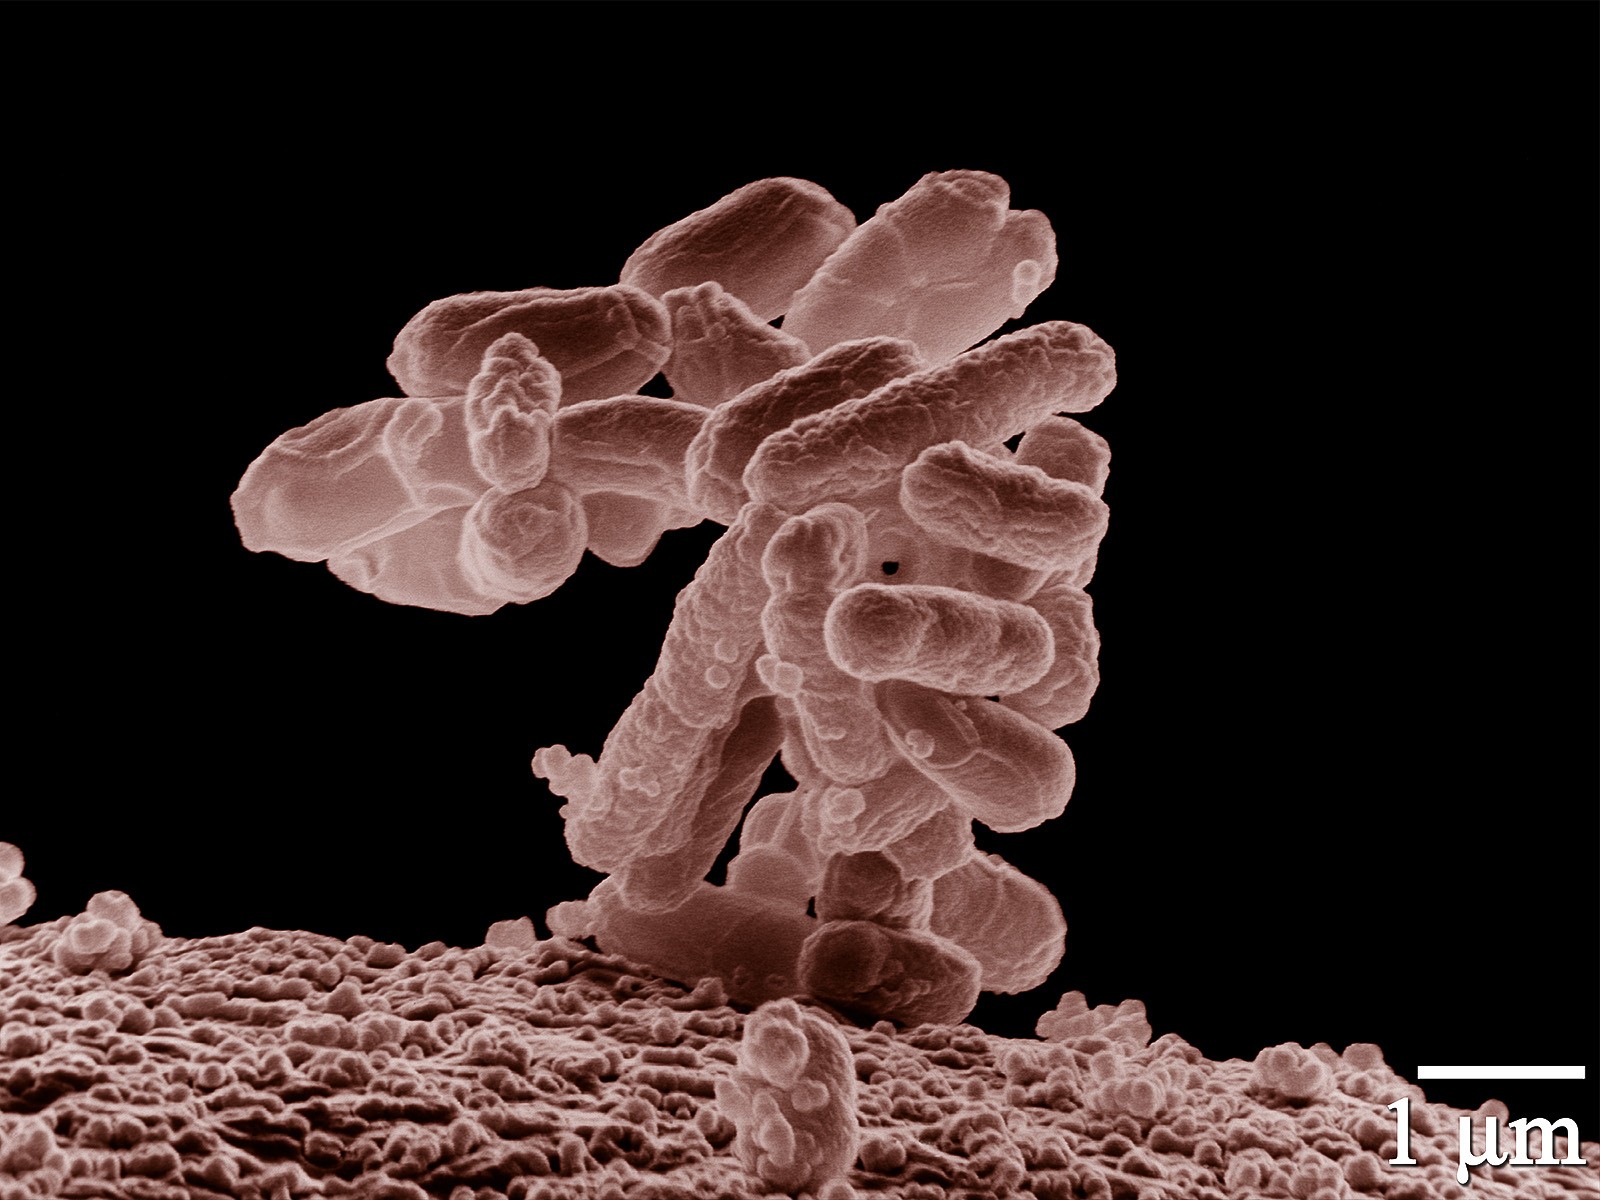 Exemplares da Escheria coli, bacteria usada no experimento (Foto: Wikimedia Commons)